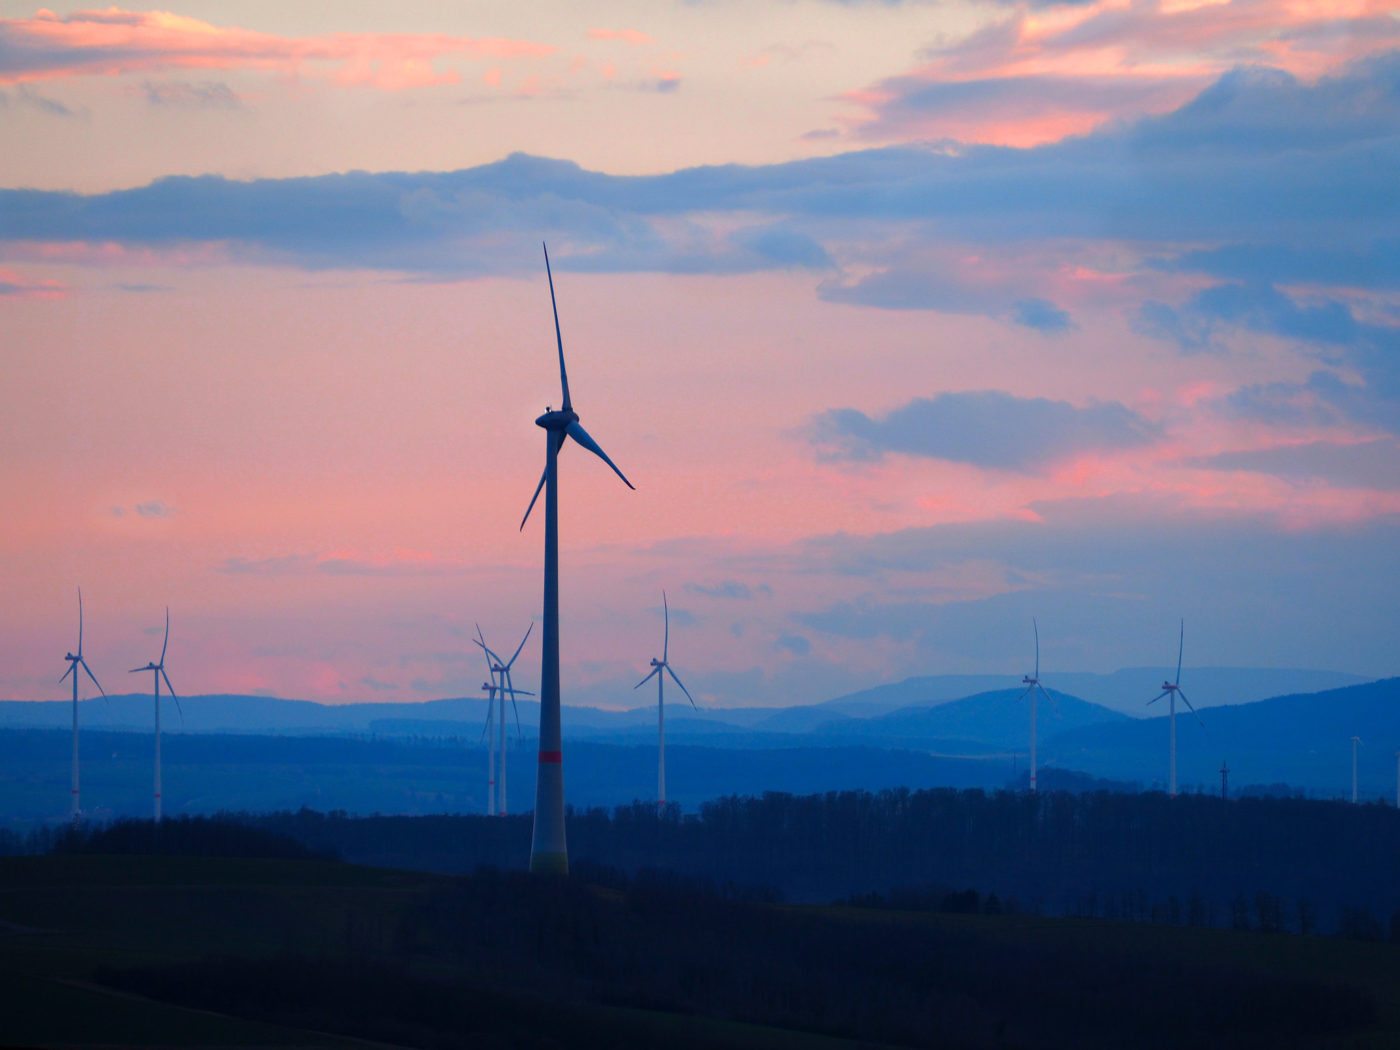 歐洲 2021 年安裝 17GW 風能，創新紀錄但難滿足氣候目標